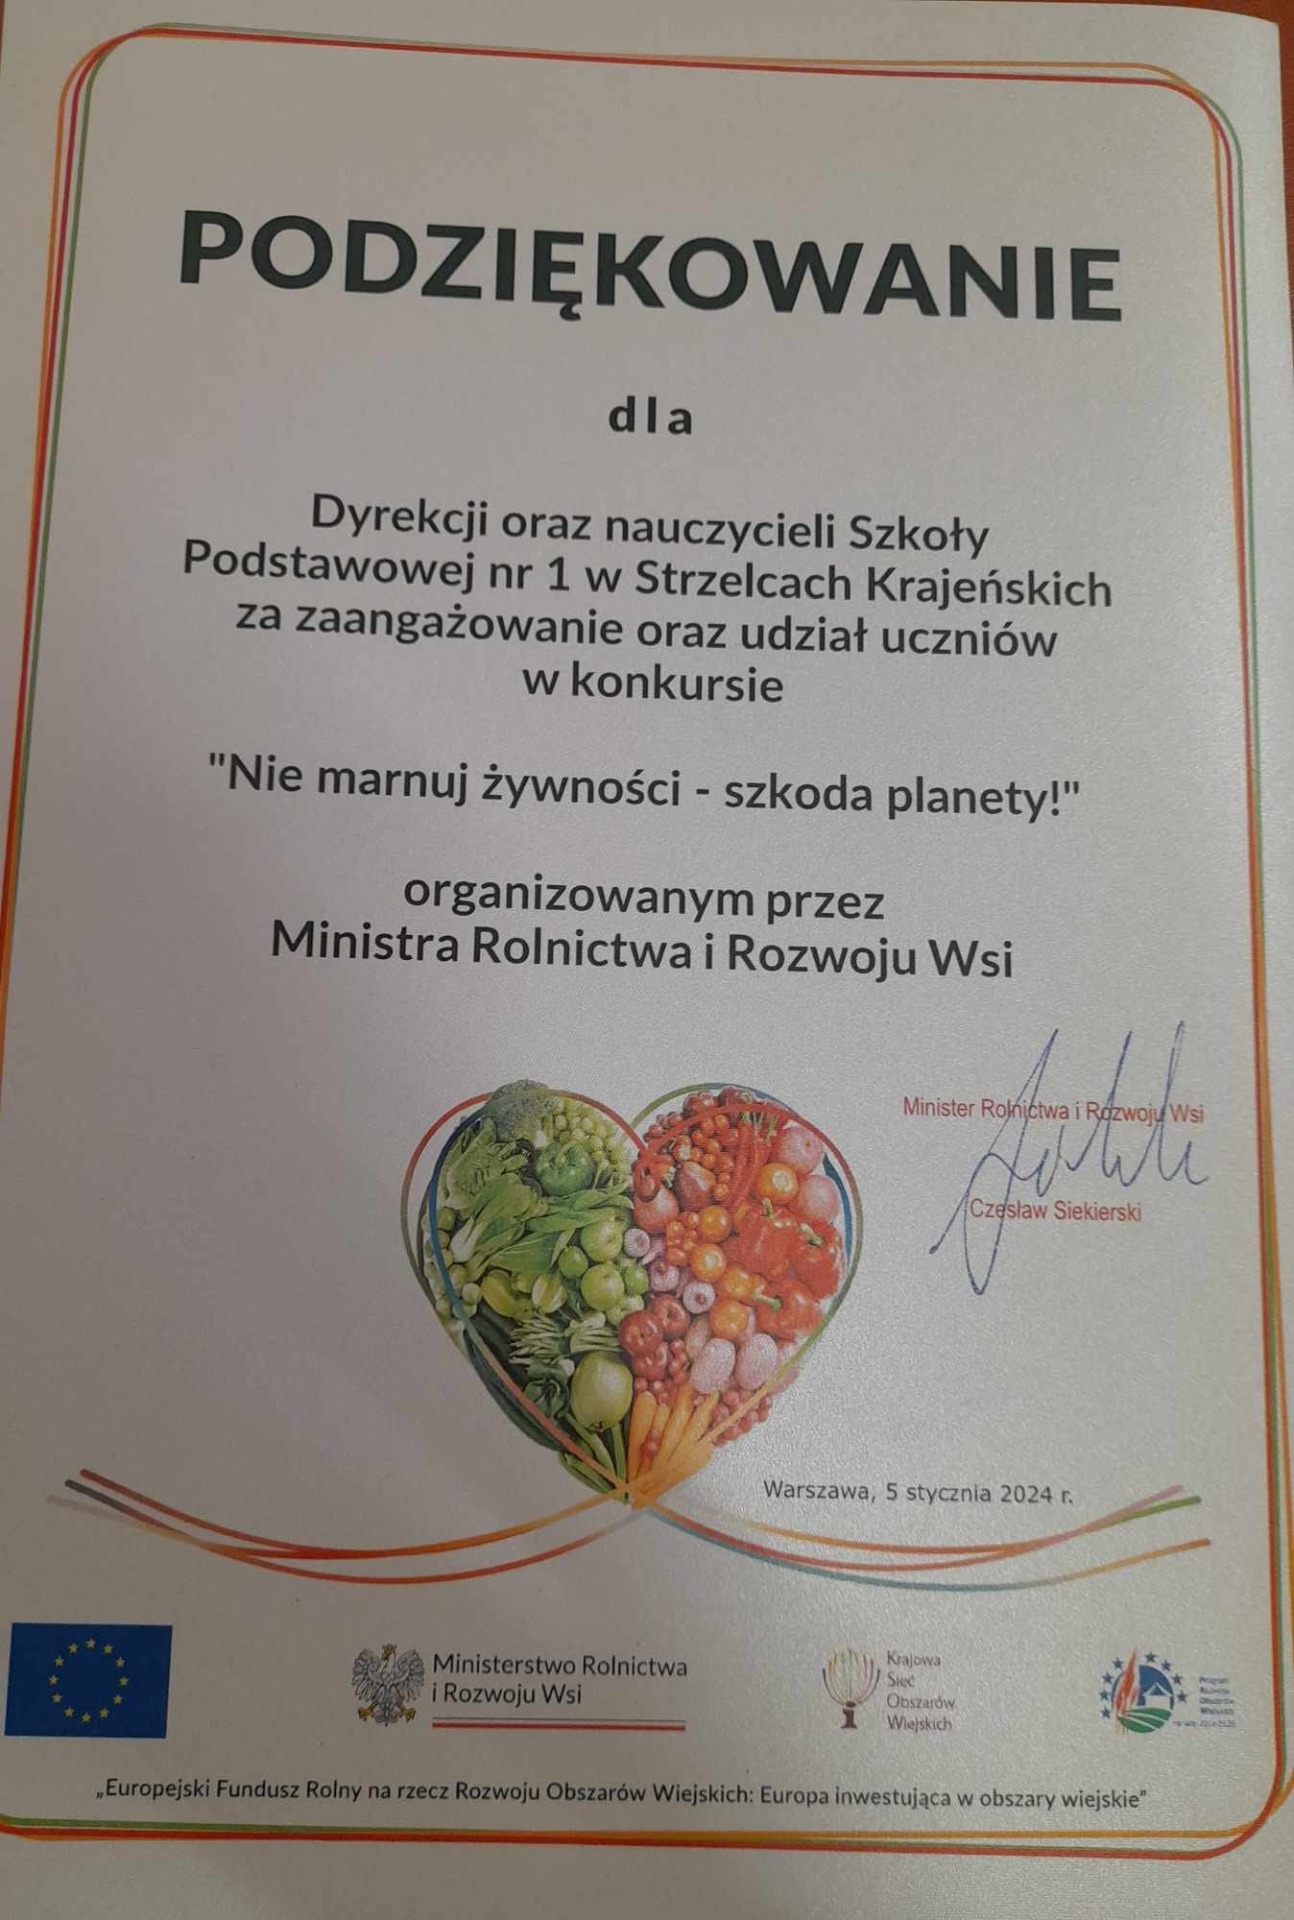 Wręczenie dyplomów konkursu "Nie marnuj żywności - szkoda planety!" - Obrazek 1